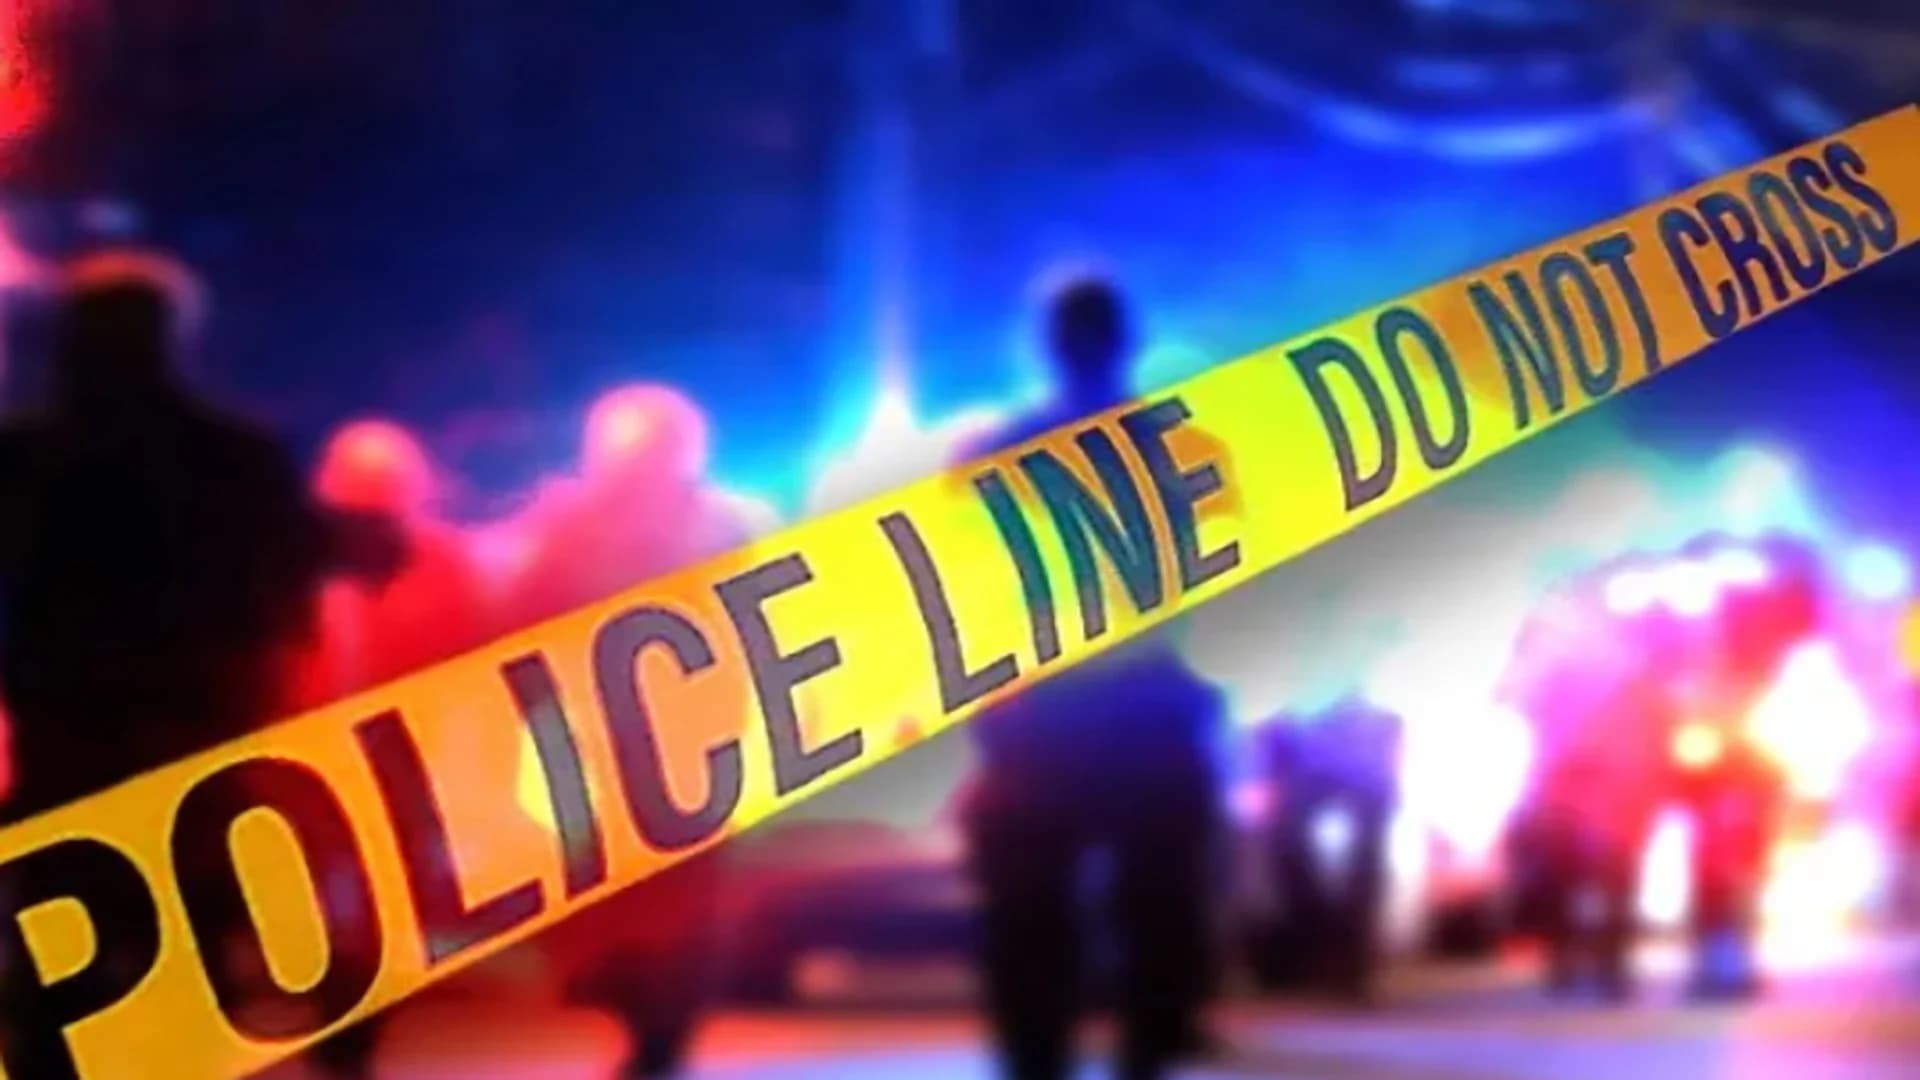 Camden County prosecutor: Man fatally shot inside Camden apartment